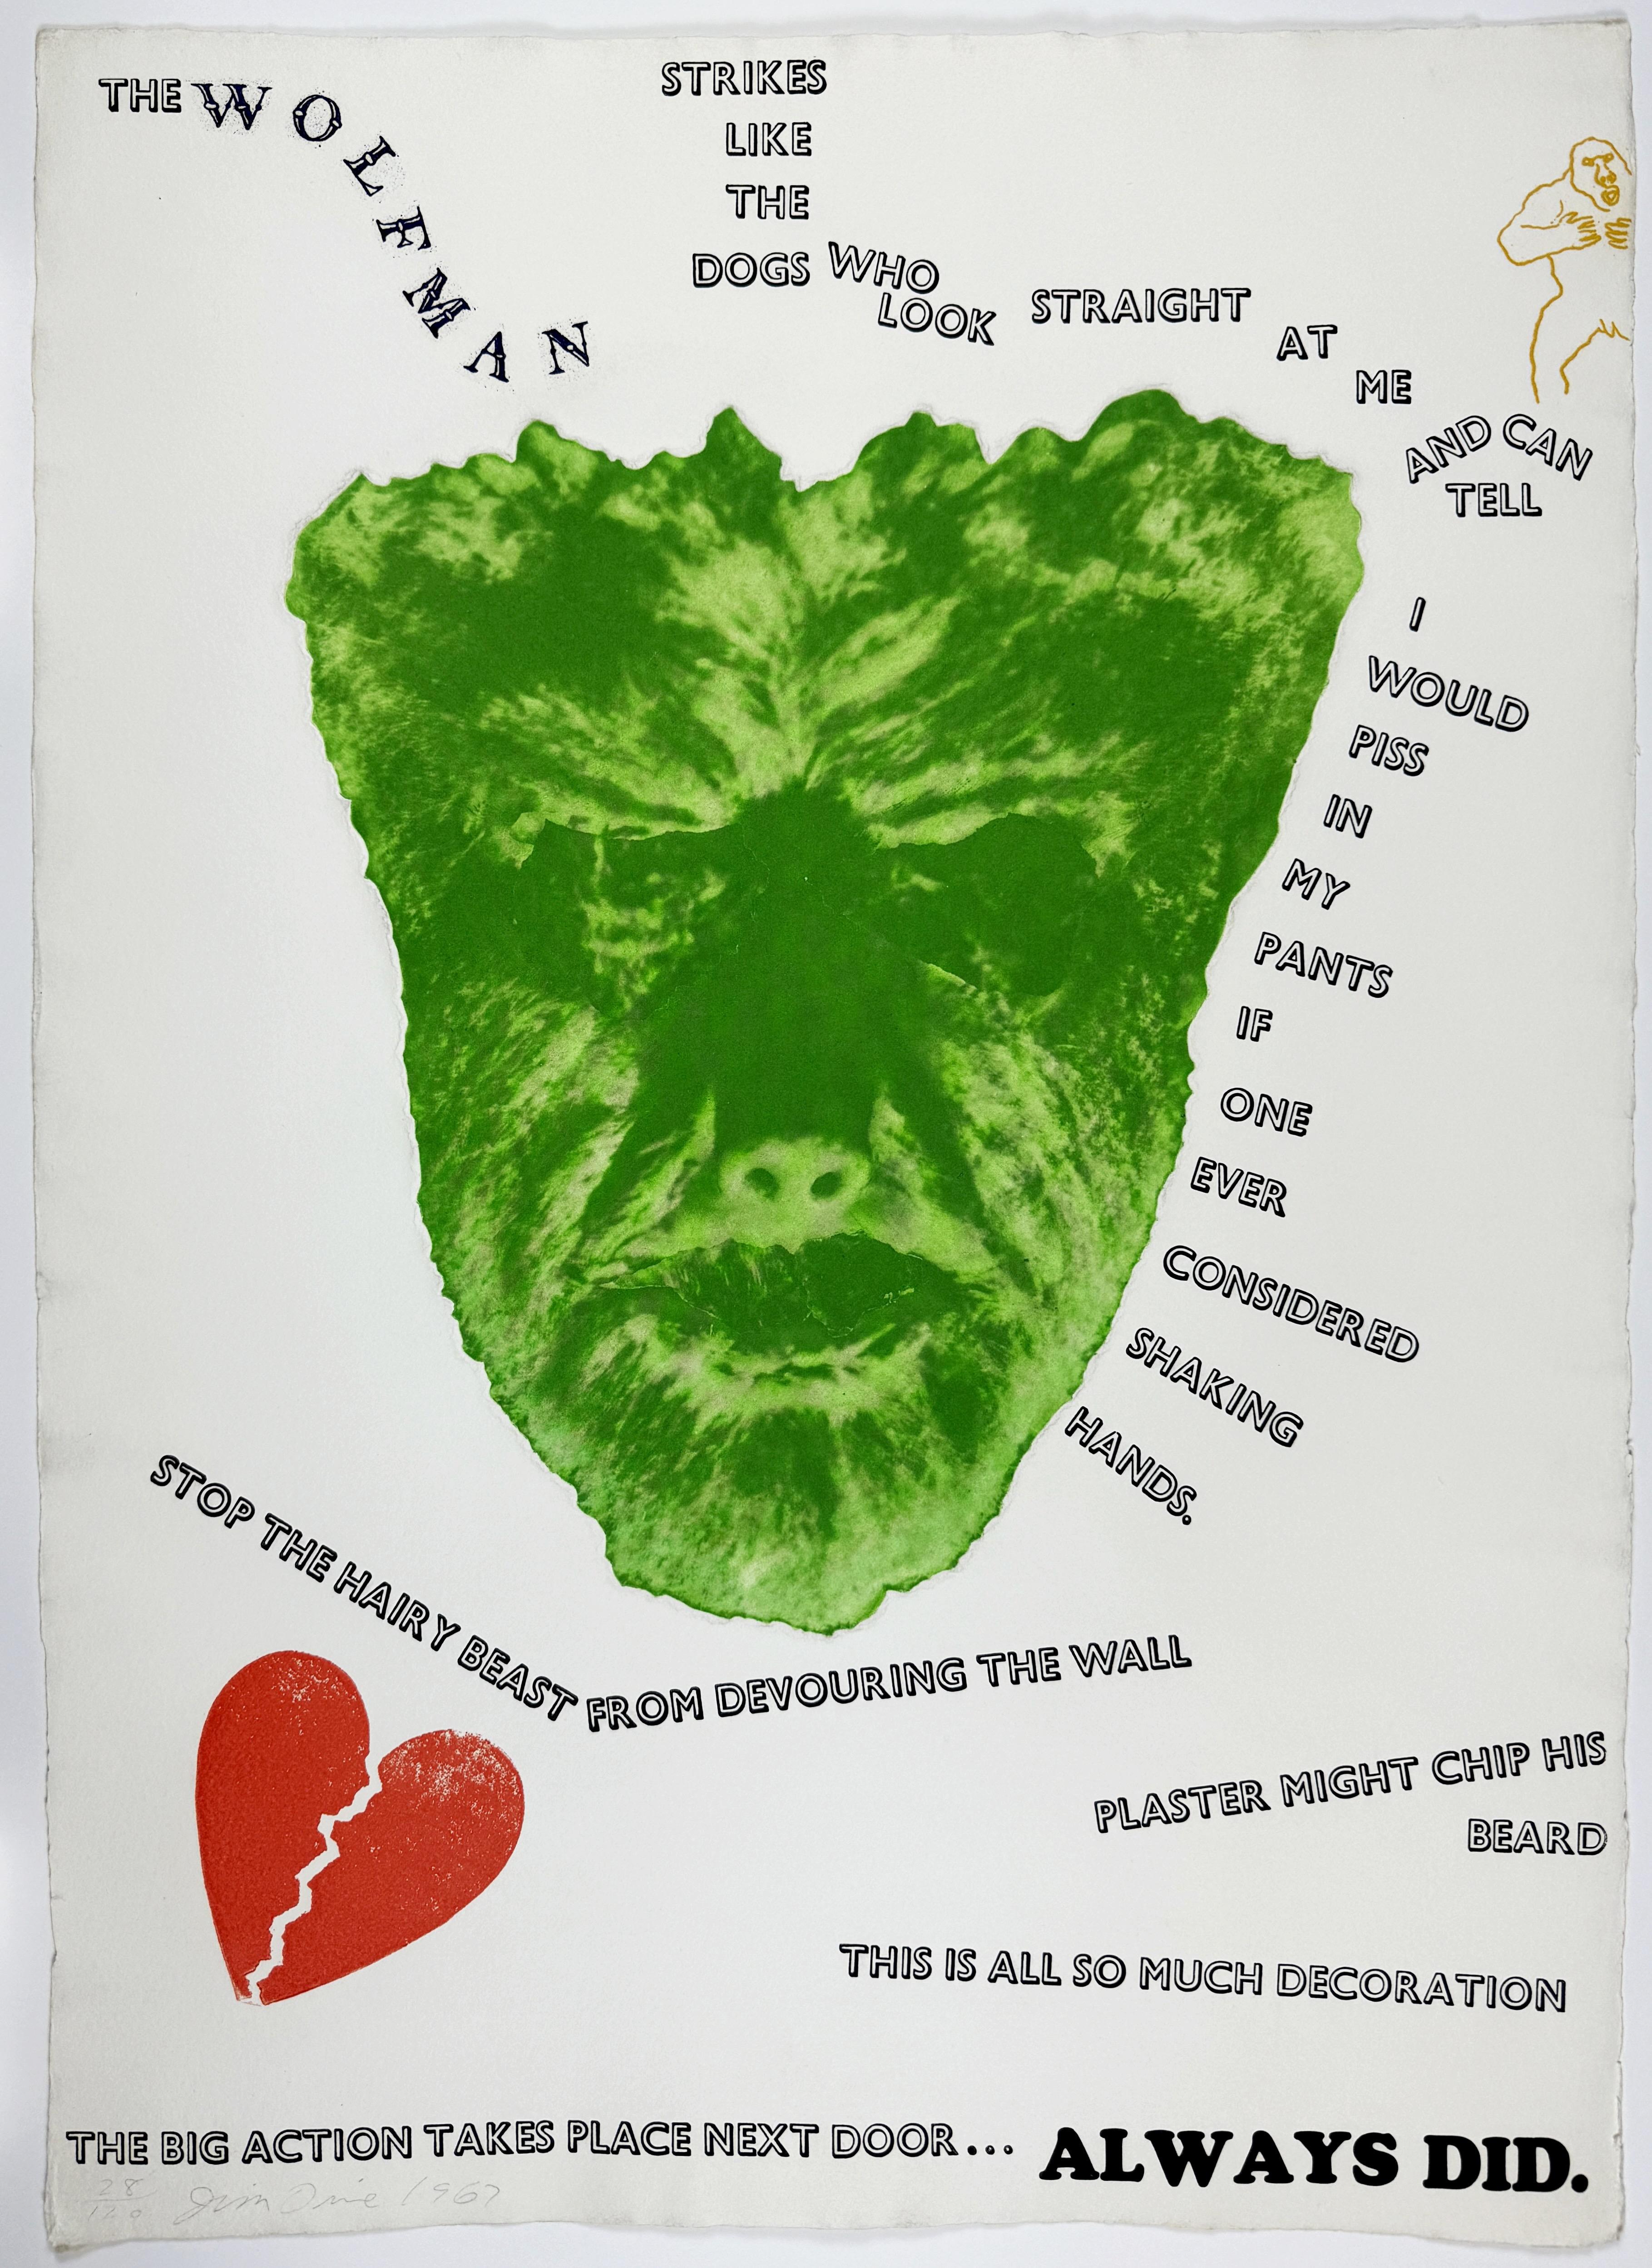 Le mur du loup (The Wolfman) de Jim Dine, film monstres rétro vintage avec kong roi